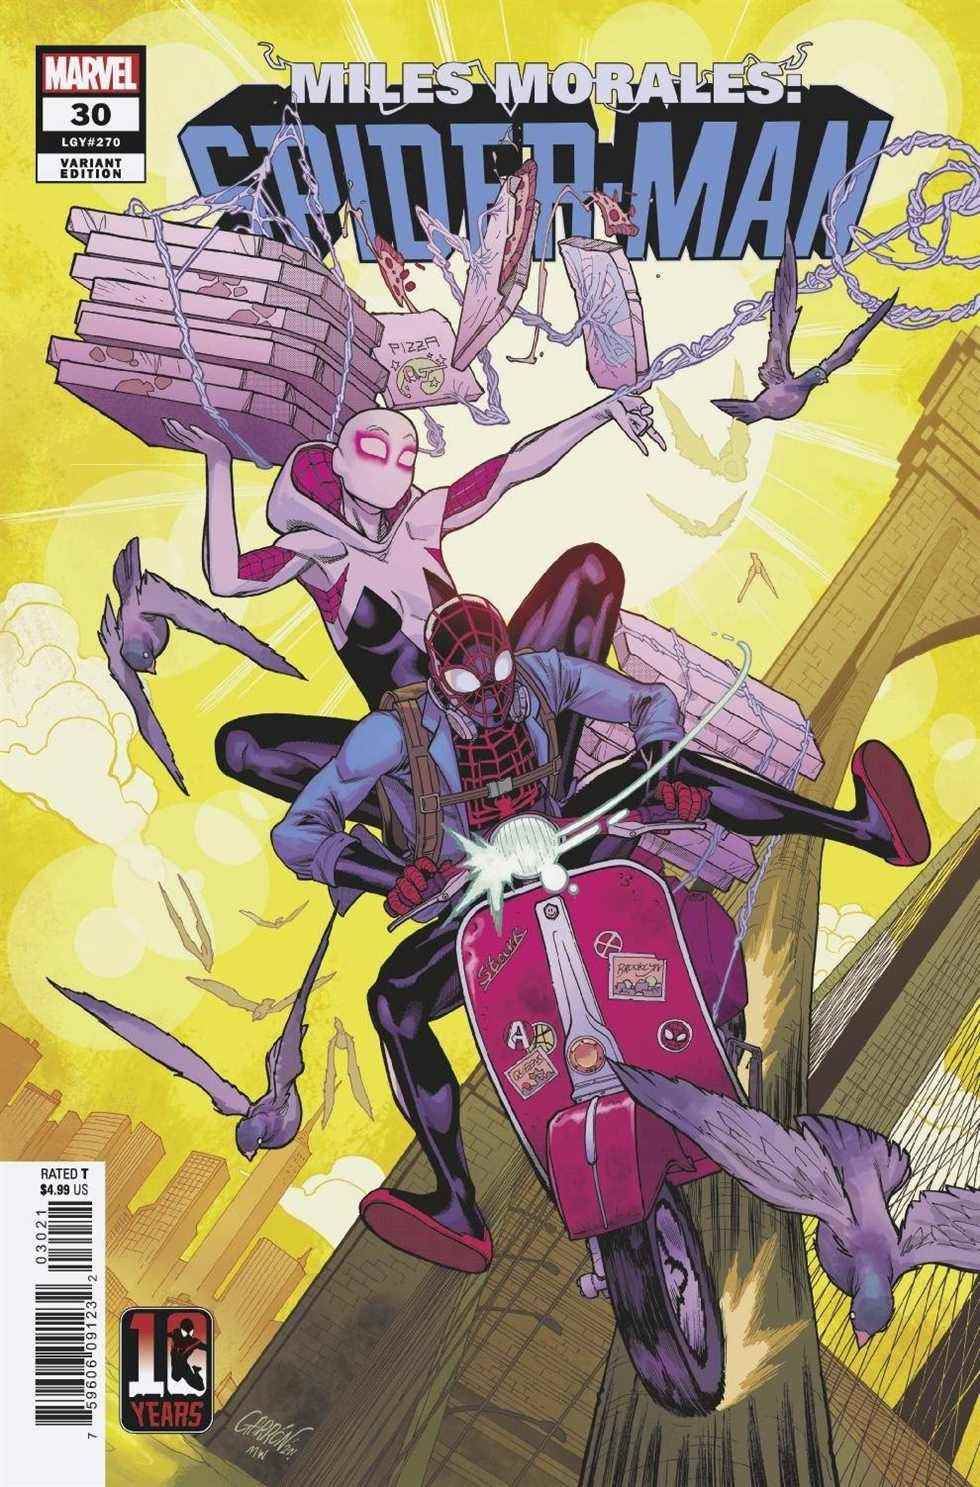 Couverture de Miles Morales : Spider-Man #30